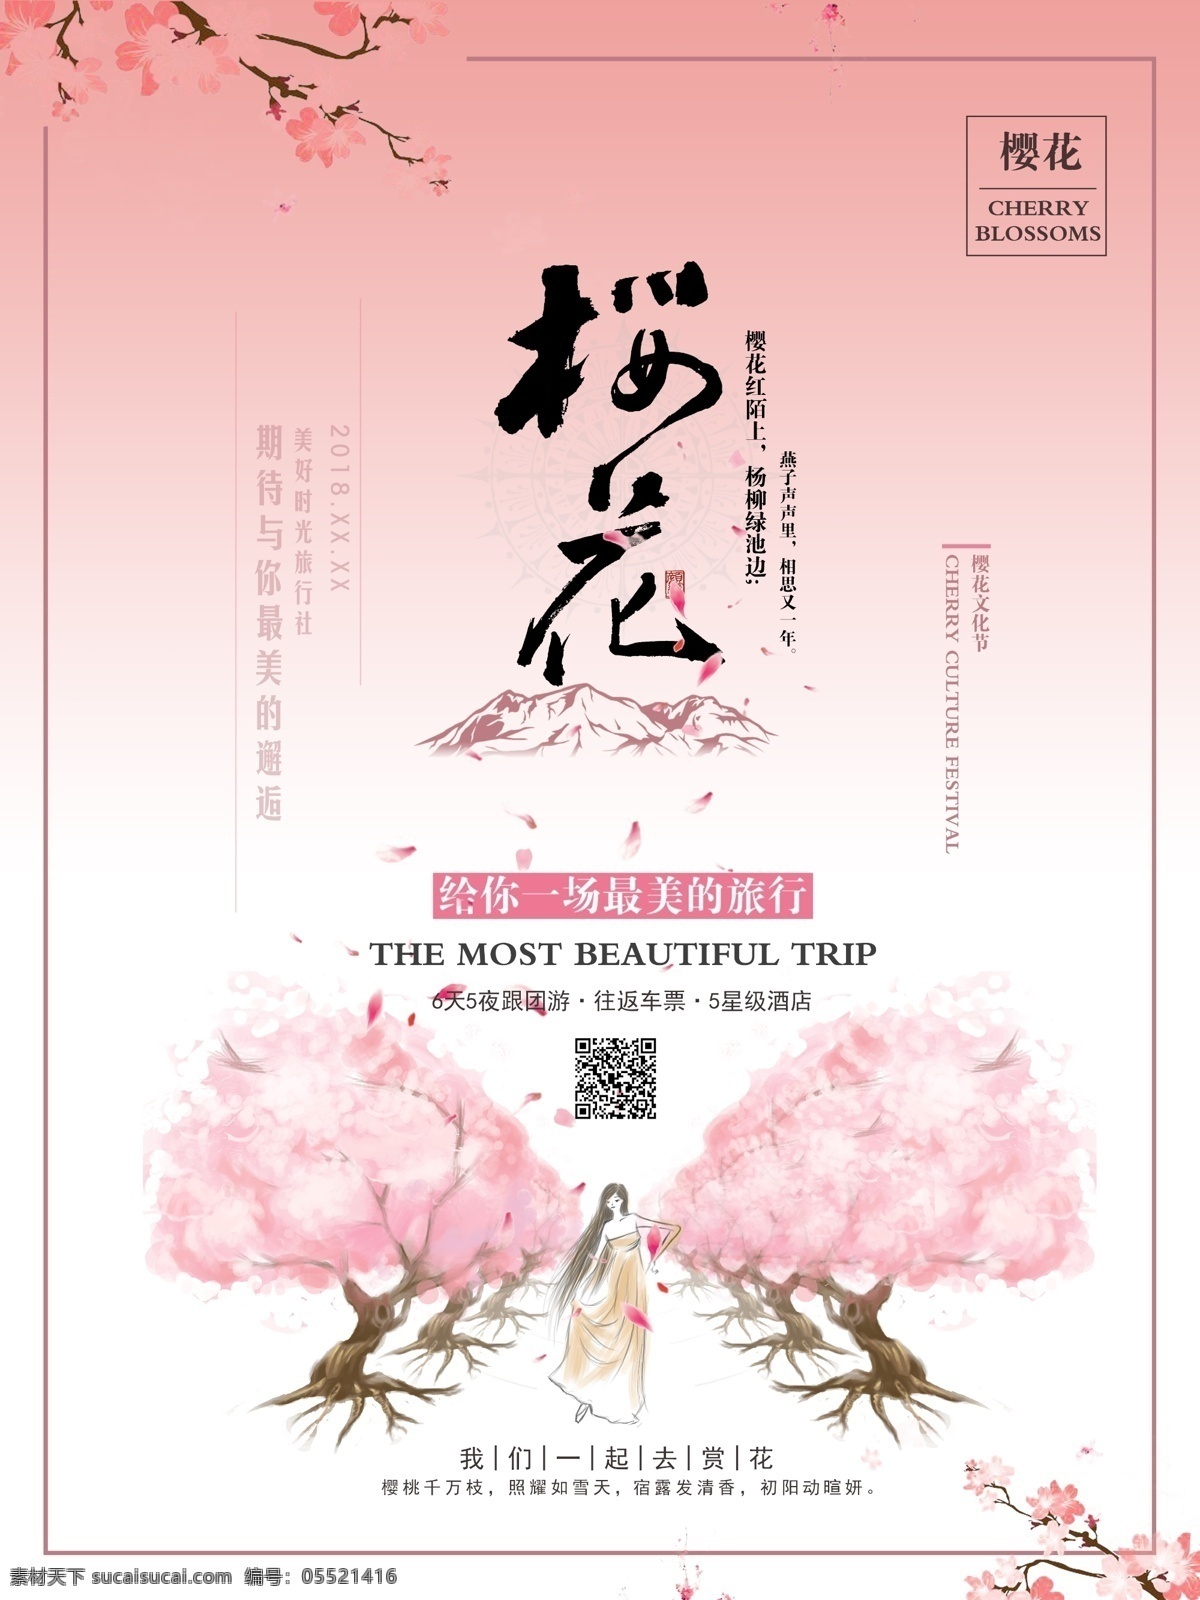 原创 插画 樱花 季 旅游 宣传海报 促销 宣传 浪漫 唯美 节日 日本 爱情